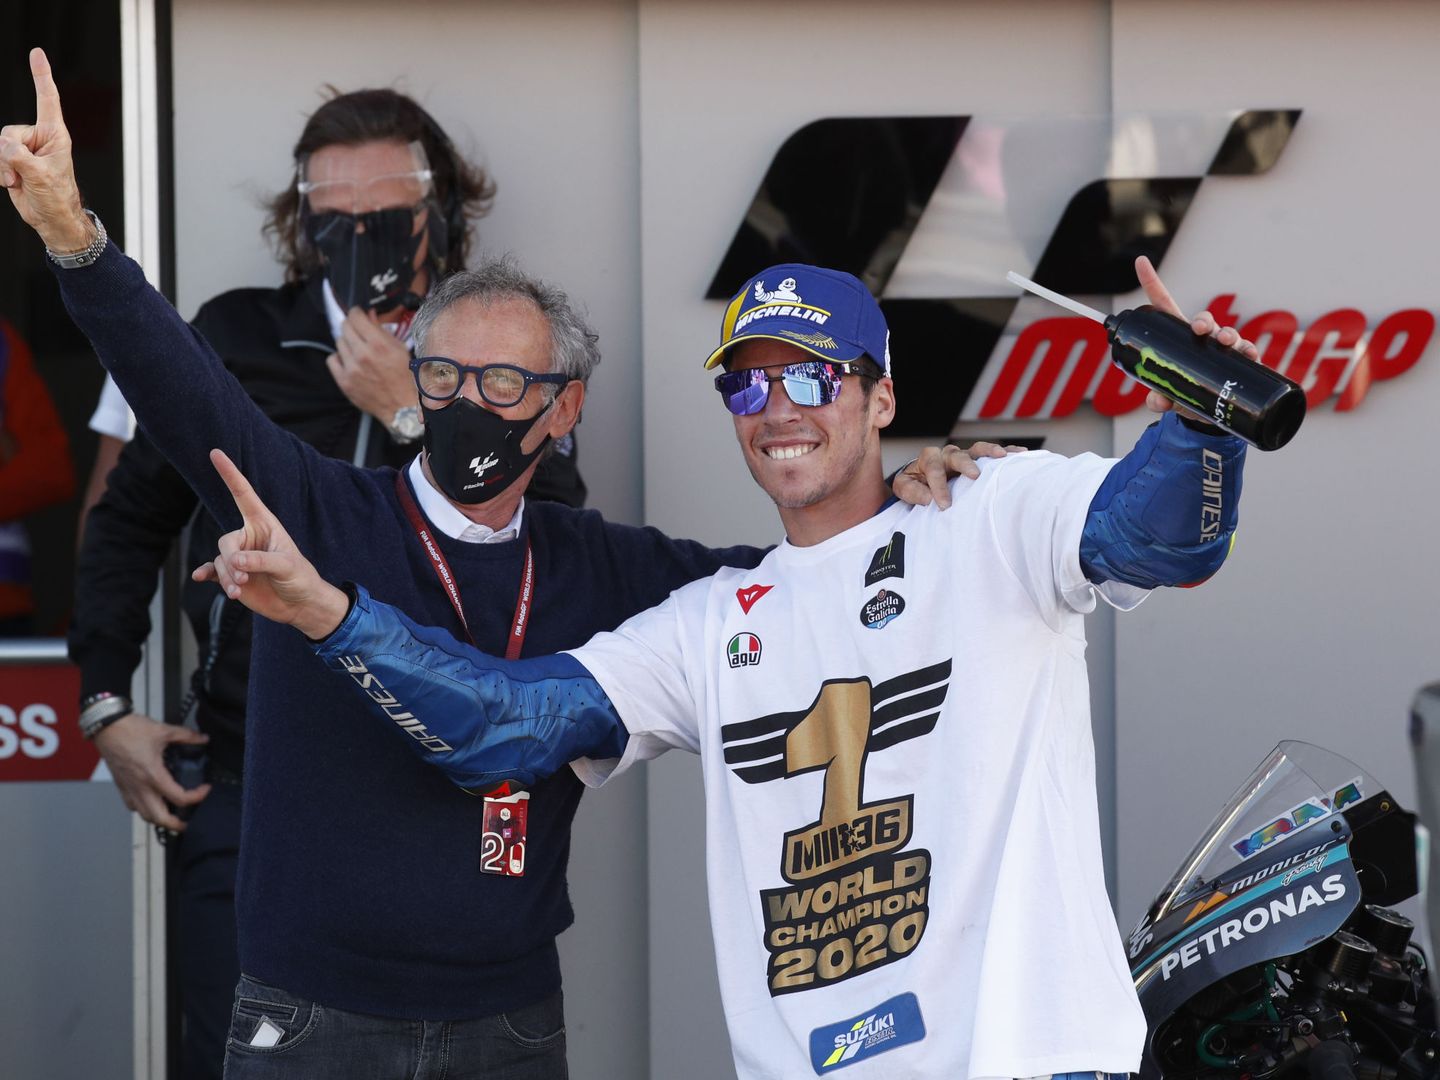  Mir celebra junto a Franco Uncini su triunfo en MotoGP. (Reuters)